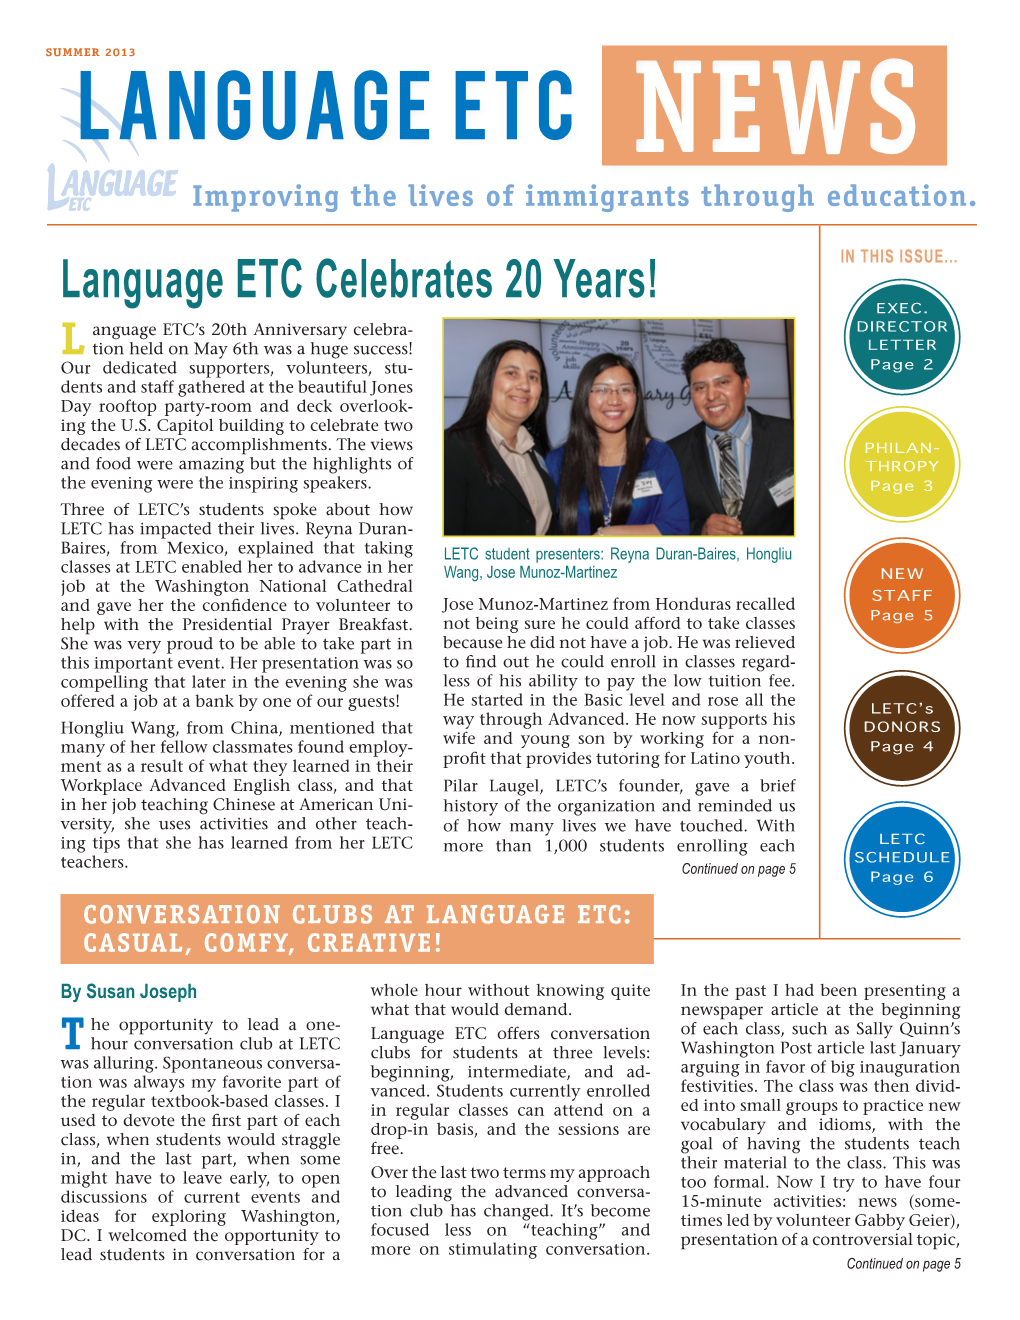 Language ETC Celebrates 20 Years!